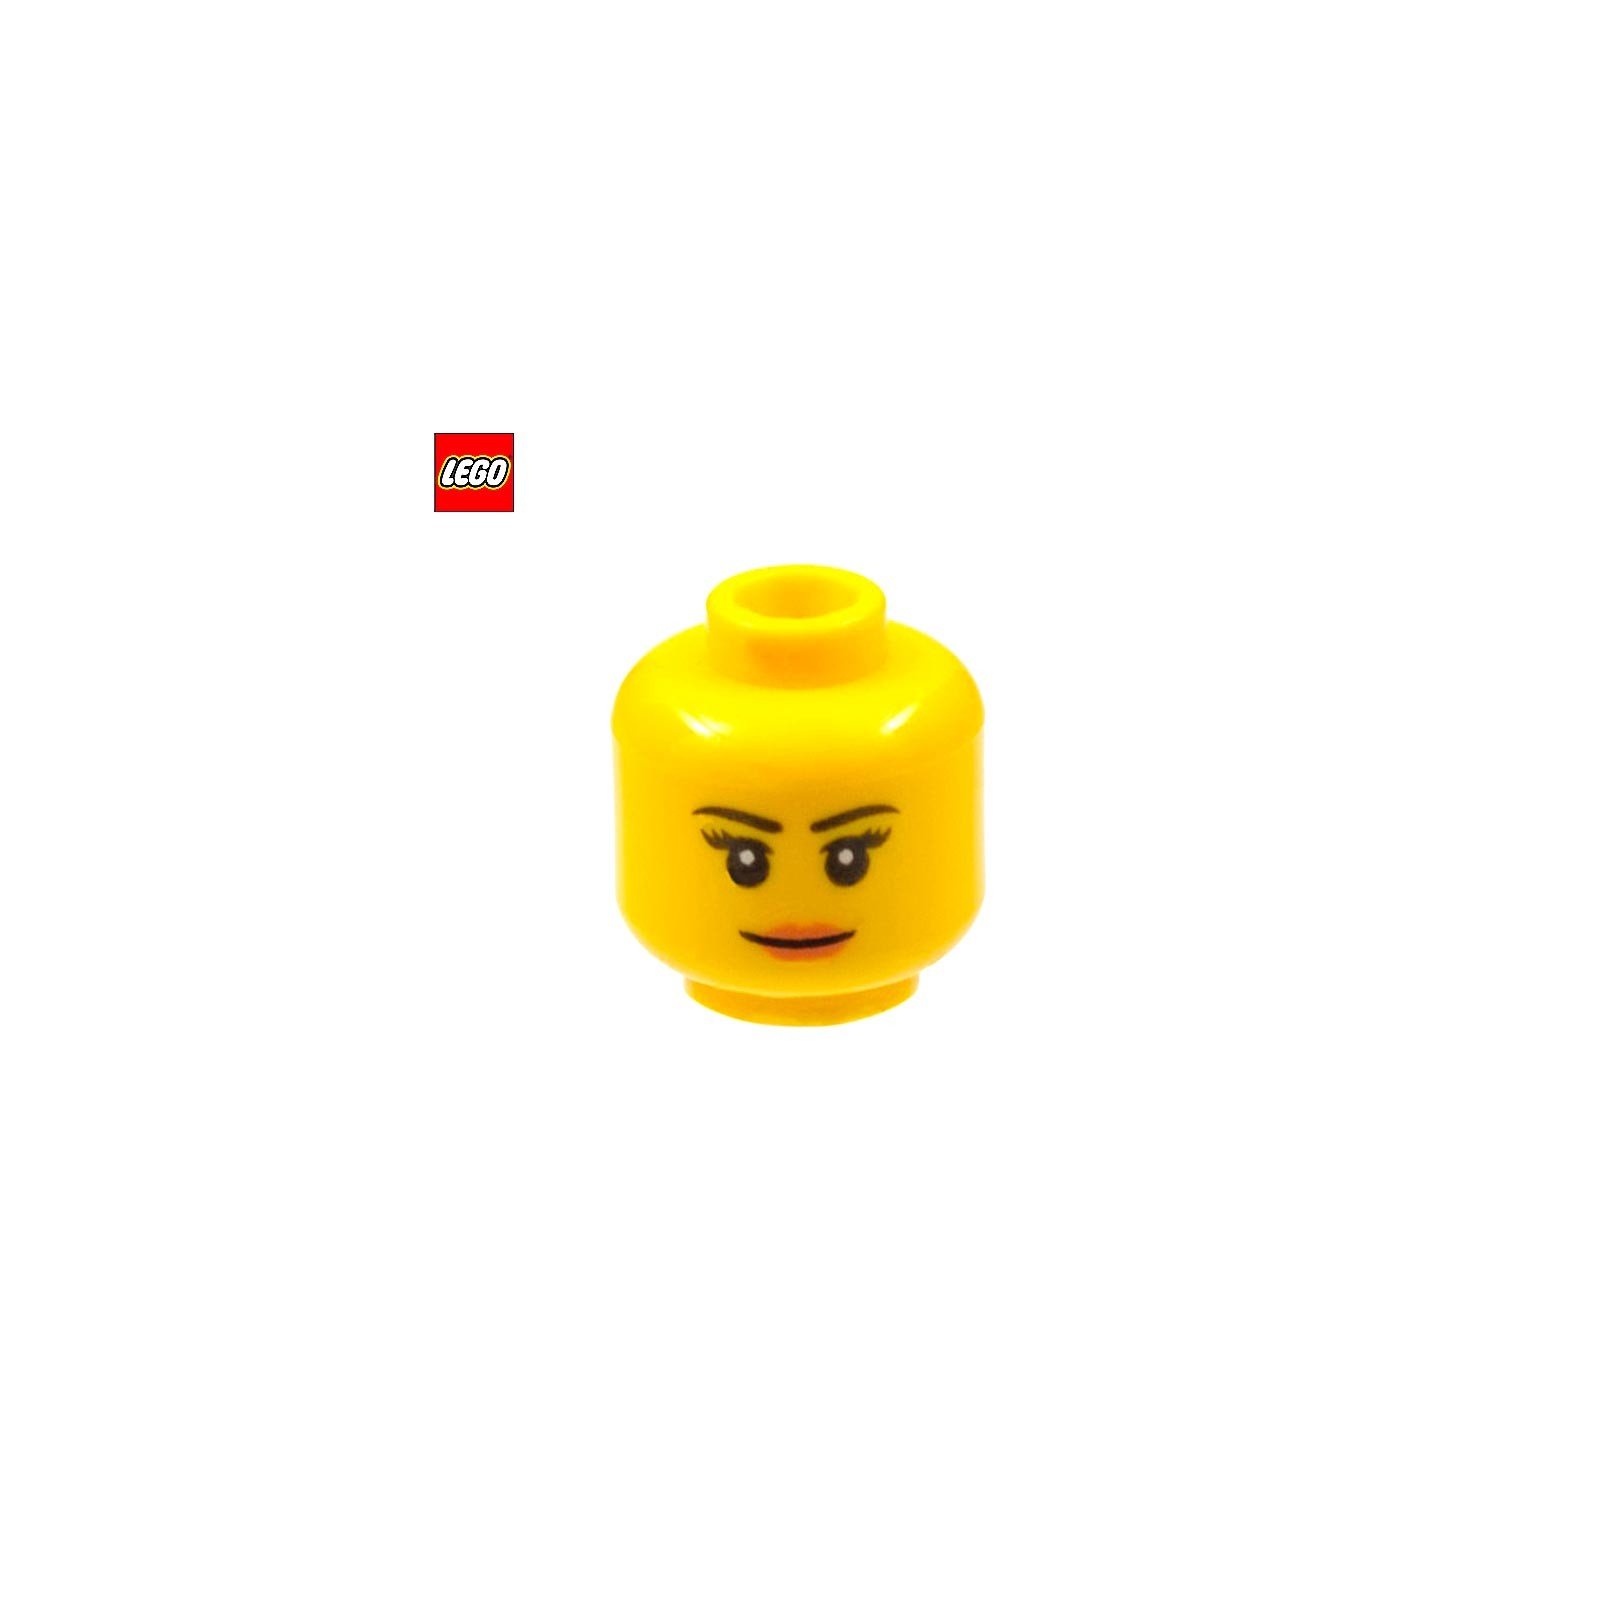 Tête de minifigurine femme avec léger sourire - Pièce LEGO® 19541